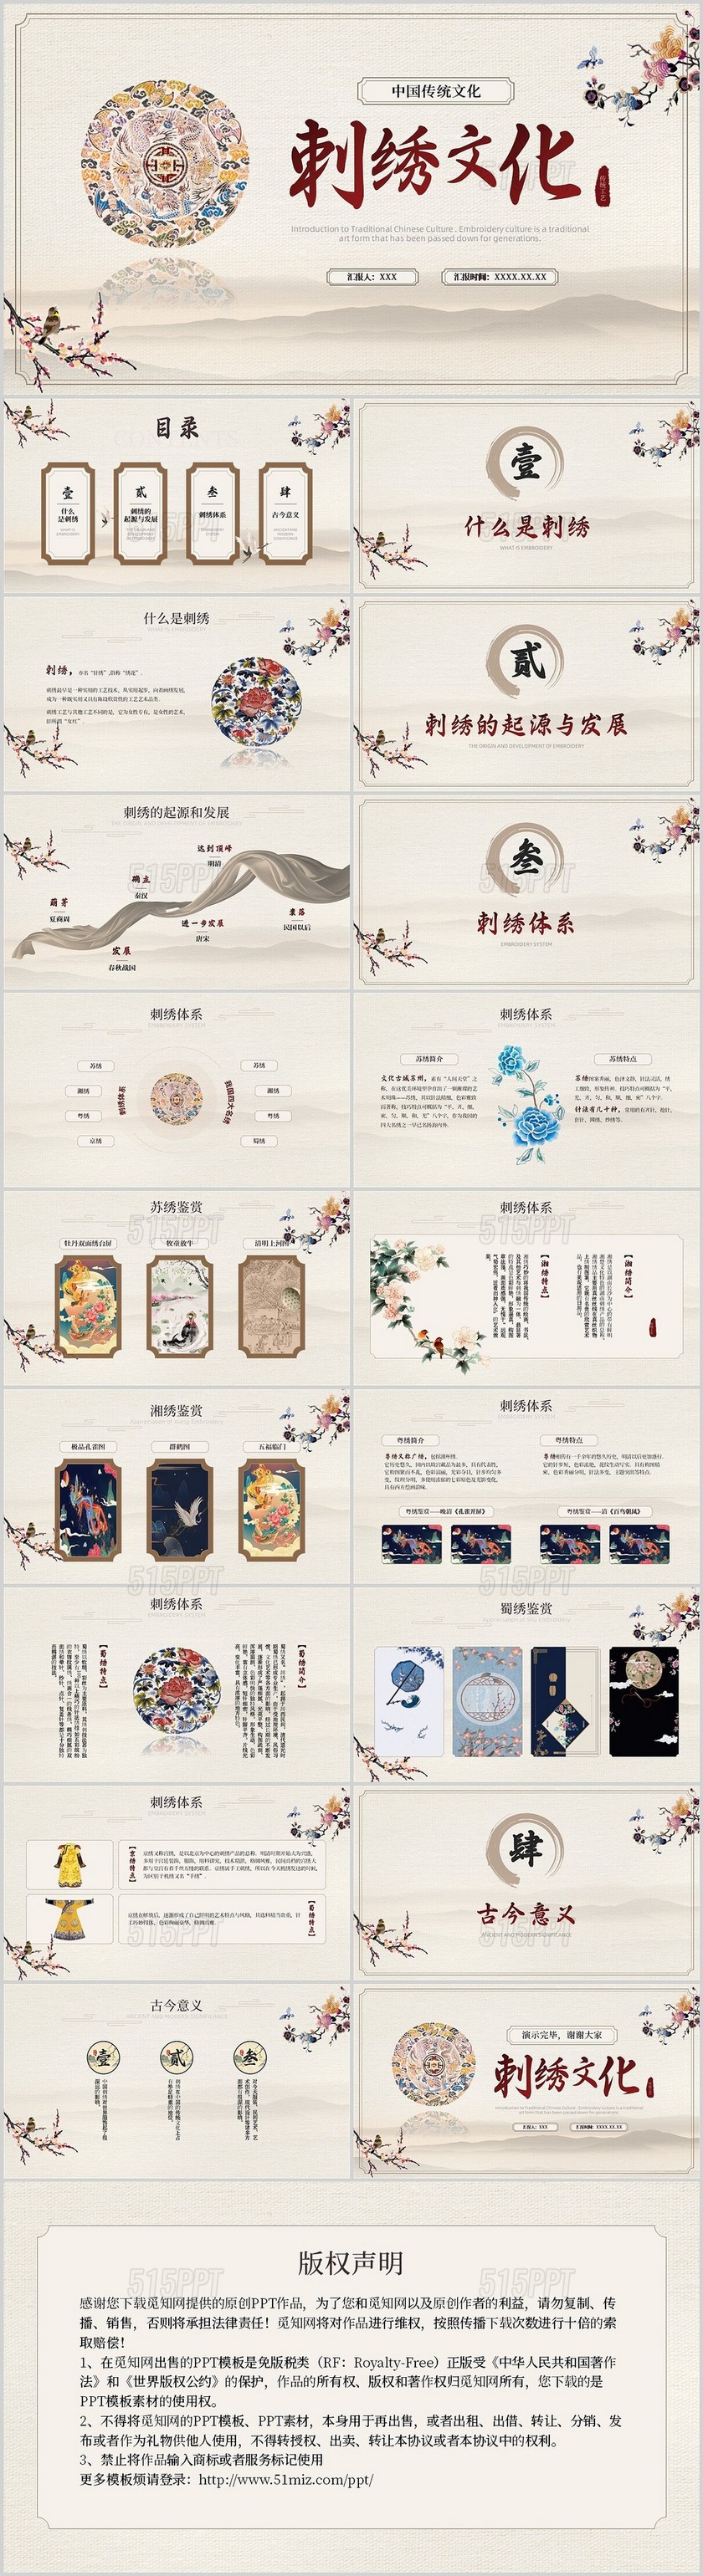 茶色水墨风中国风中国文化刺绣文化介绍模板中国传统文化